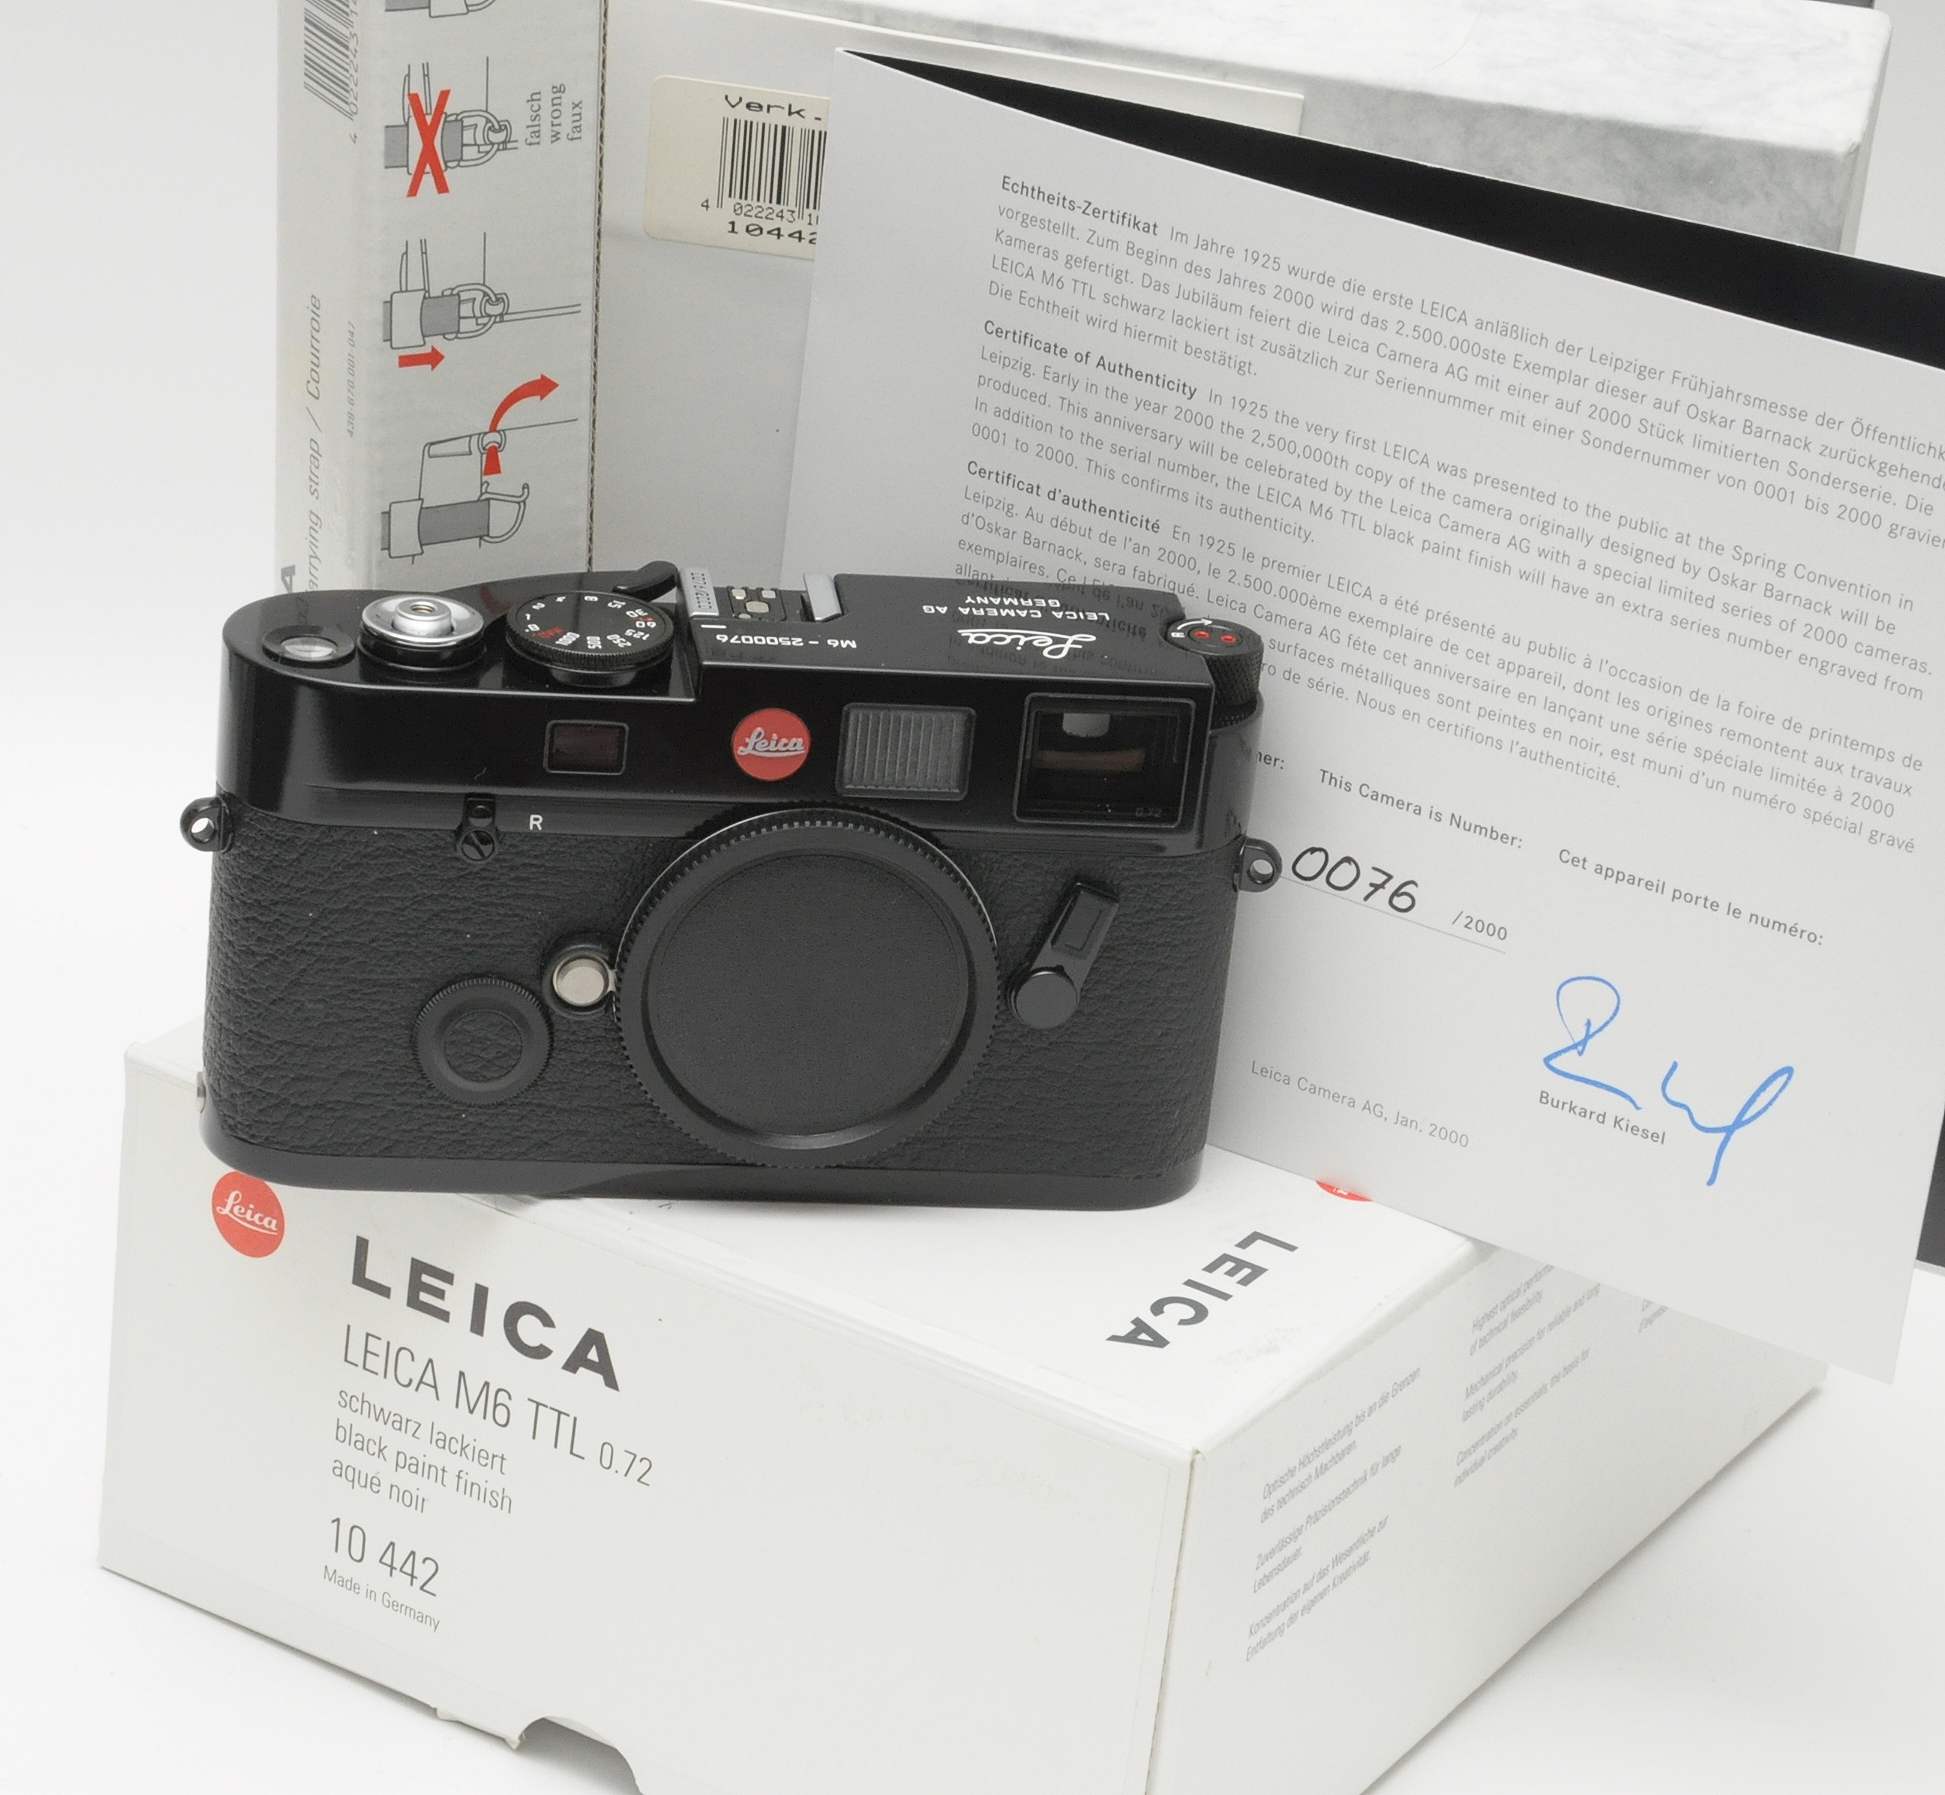 Leica M6 black paint Millennium Edition 10442 boxed  